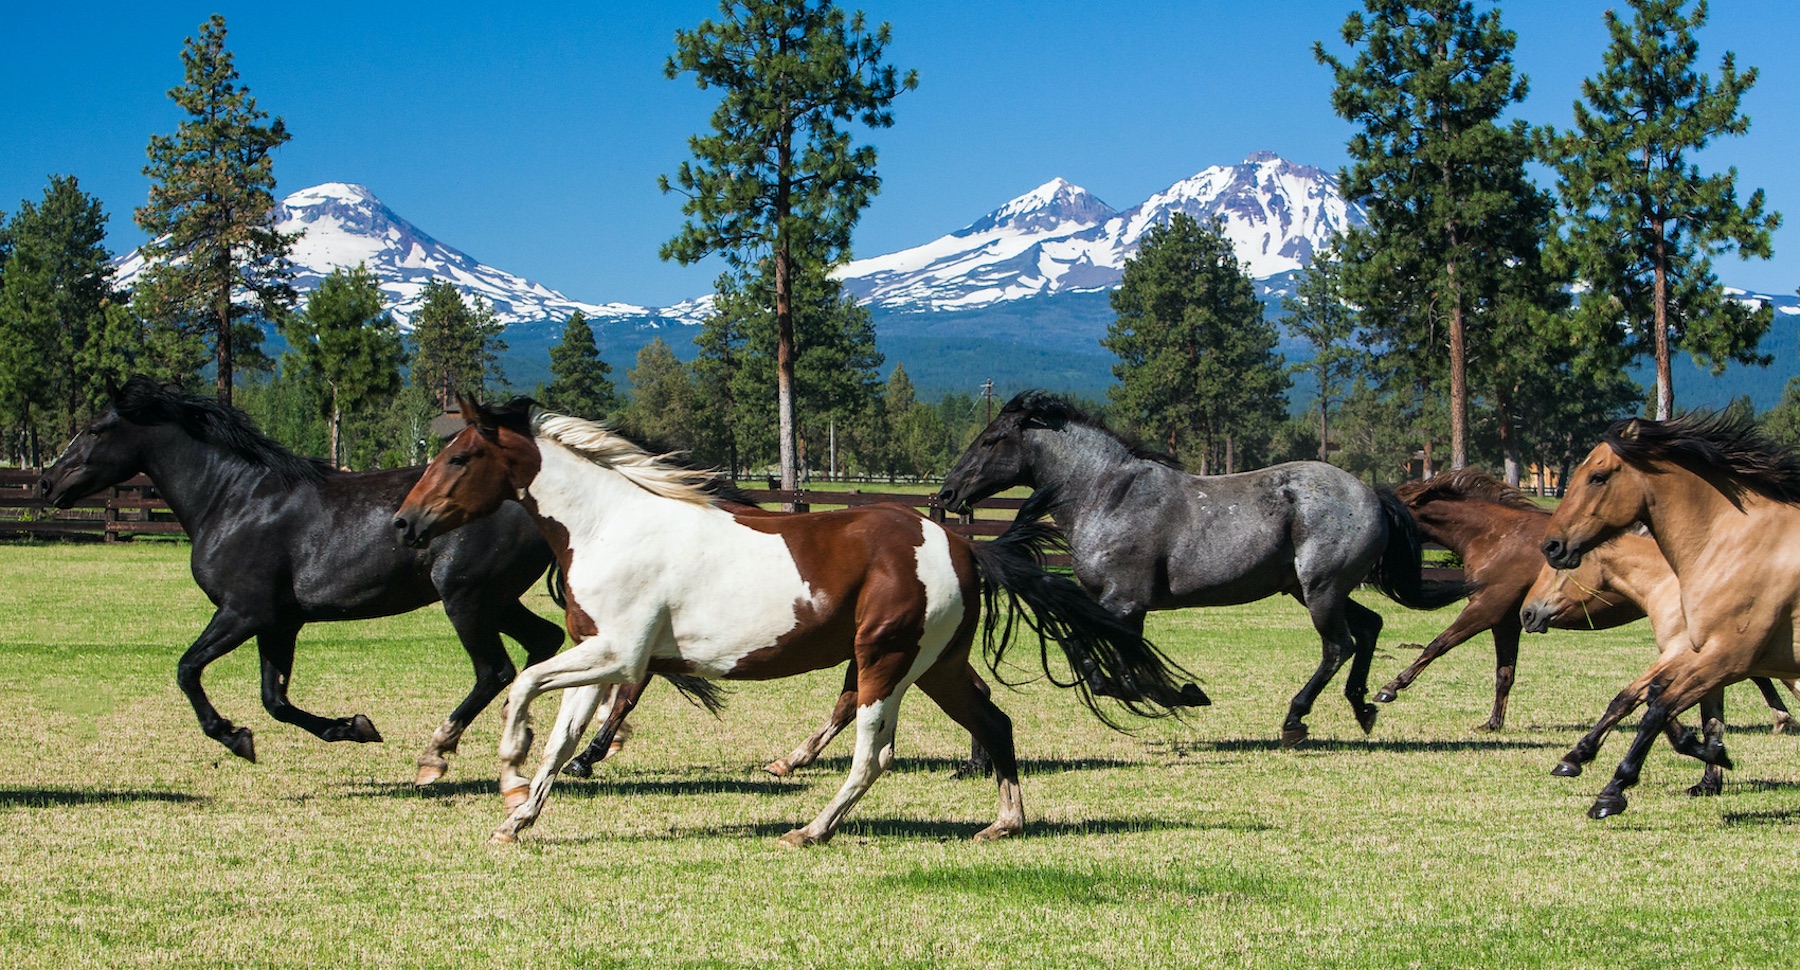 Galloping horses & Cowboy